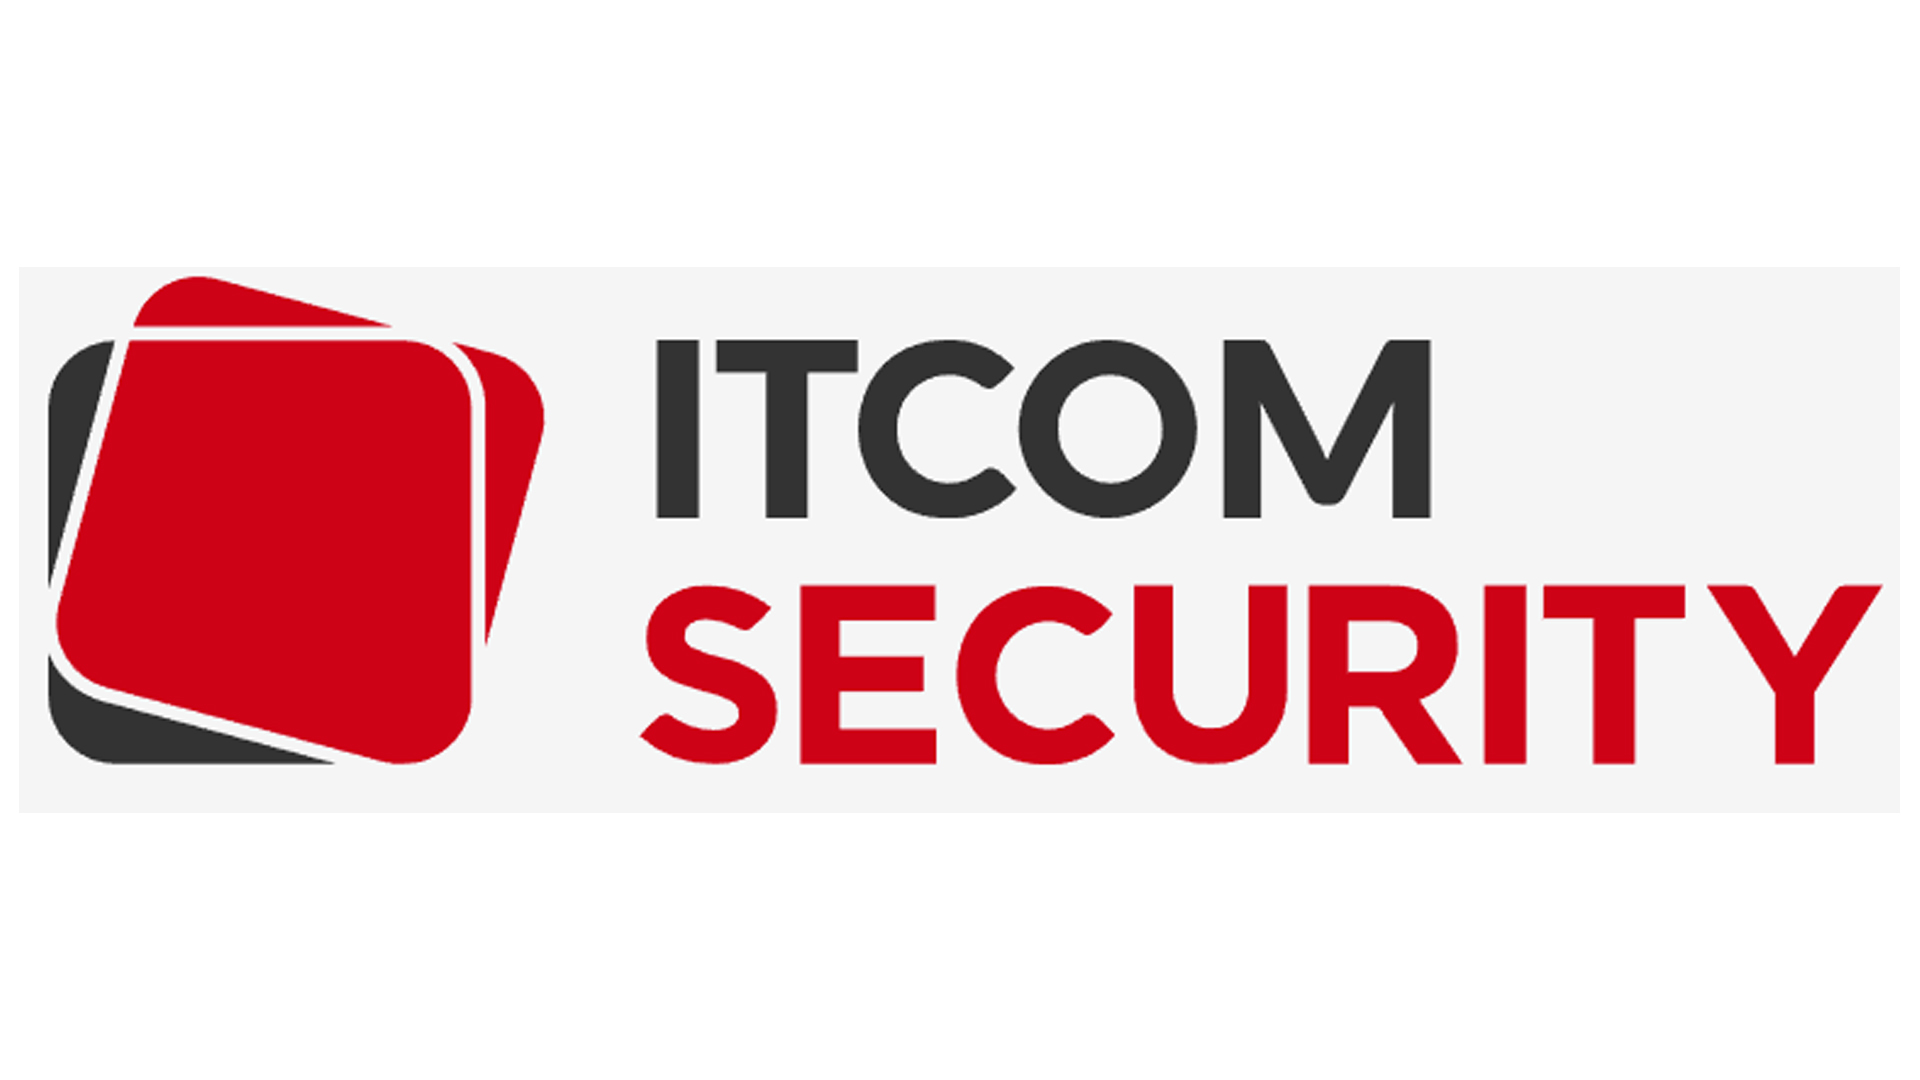 ITCOM Security